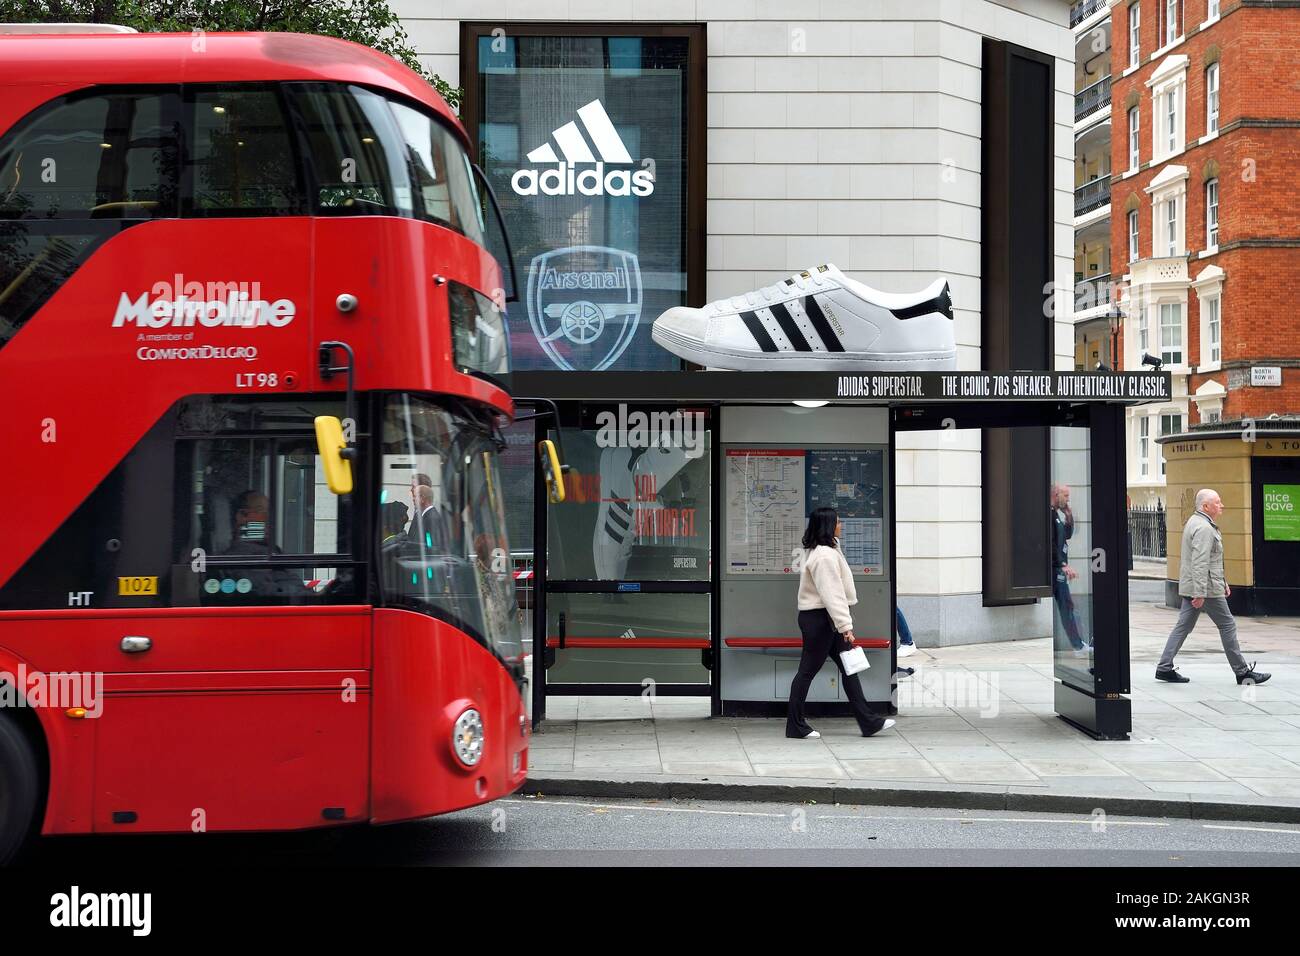 Vereinigtes Königreich, London, riesigen Schuh an einer Bushaltestelle für adidas Werbung in Oxford Street gelegen Stockfoto